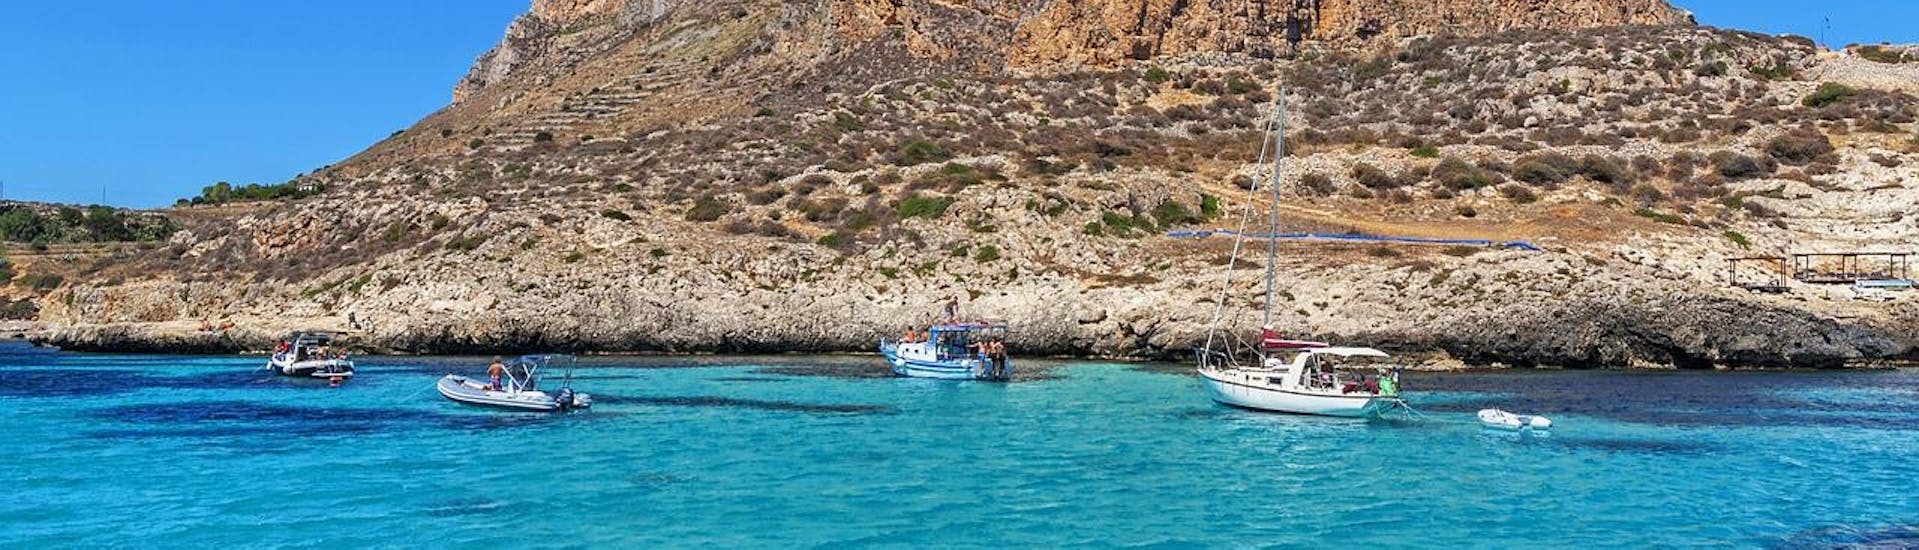 Paysage à couper le souffle de l'archipel d'Egadi lors d'une balade en bateau de San Vito Lo Capo à Favignana et Levanzo avec Egadi Navigazione.